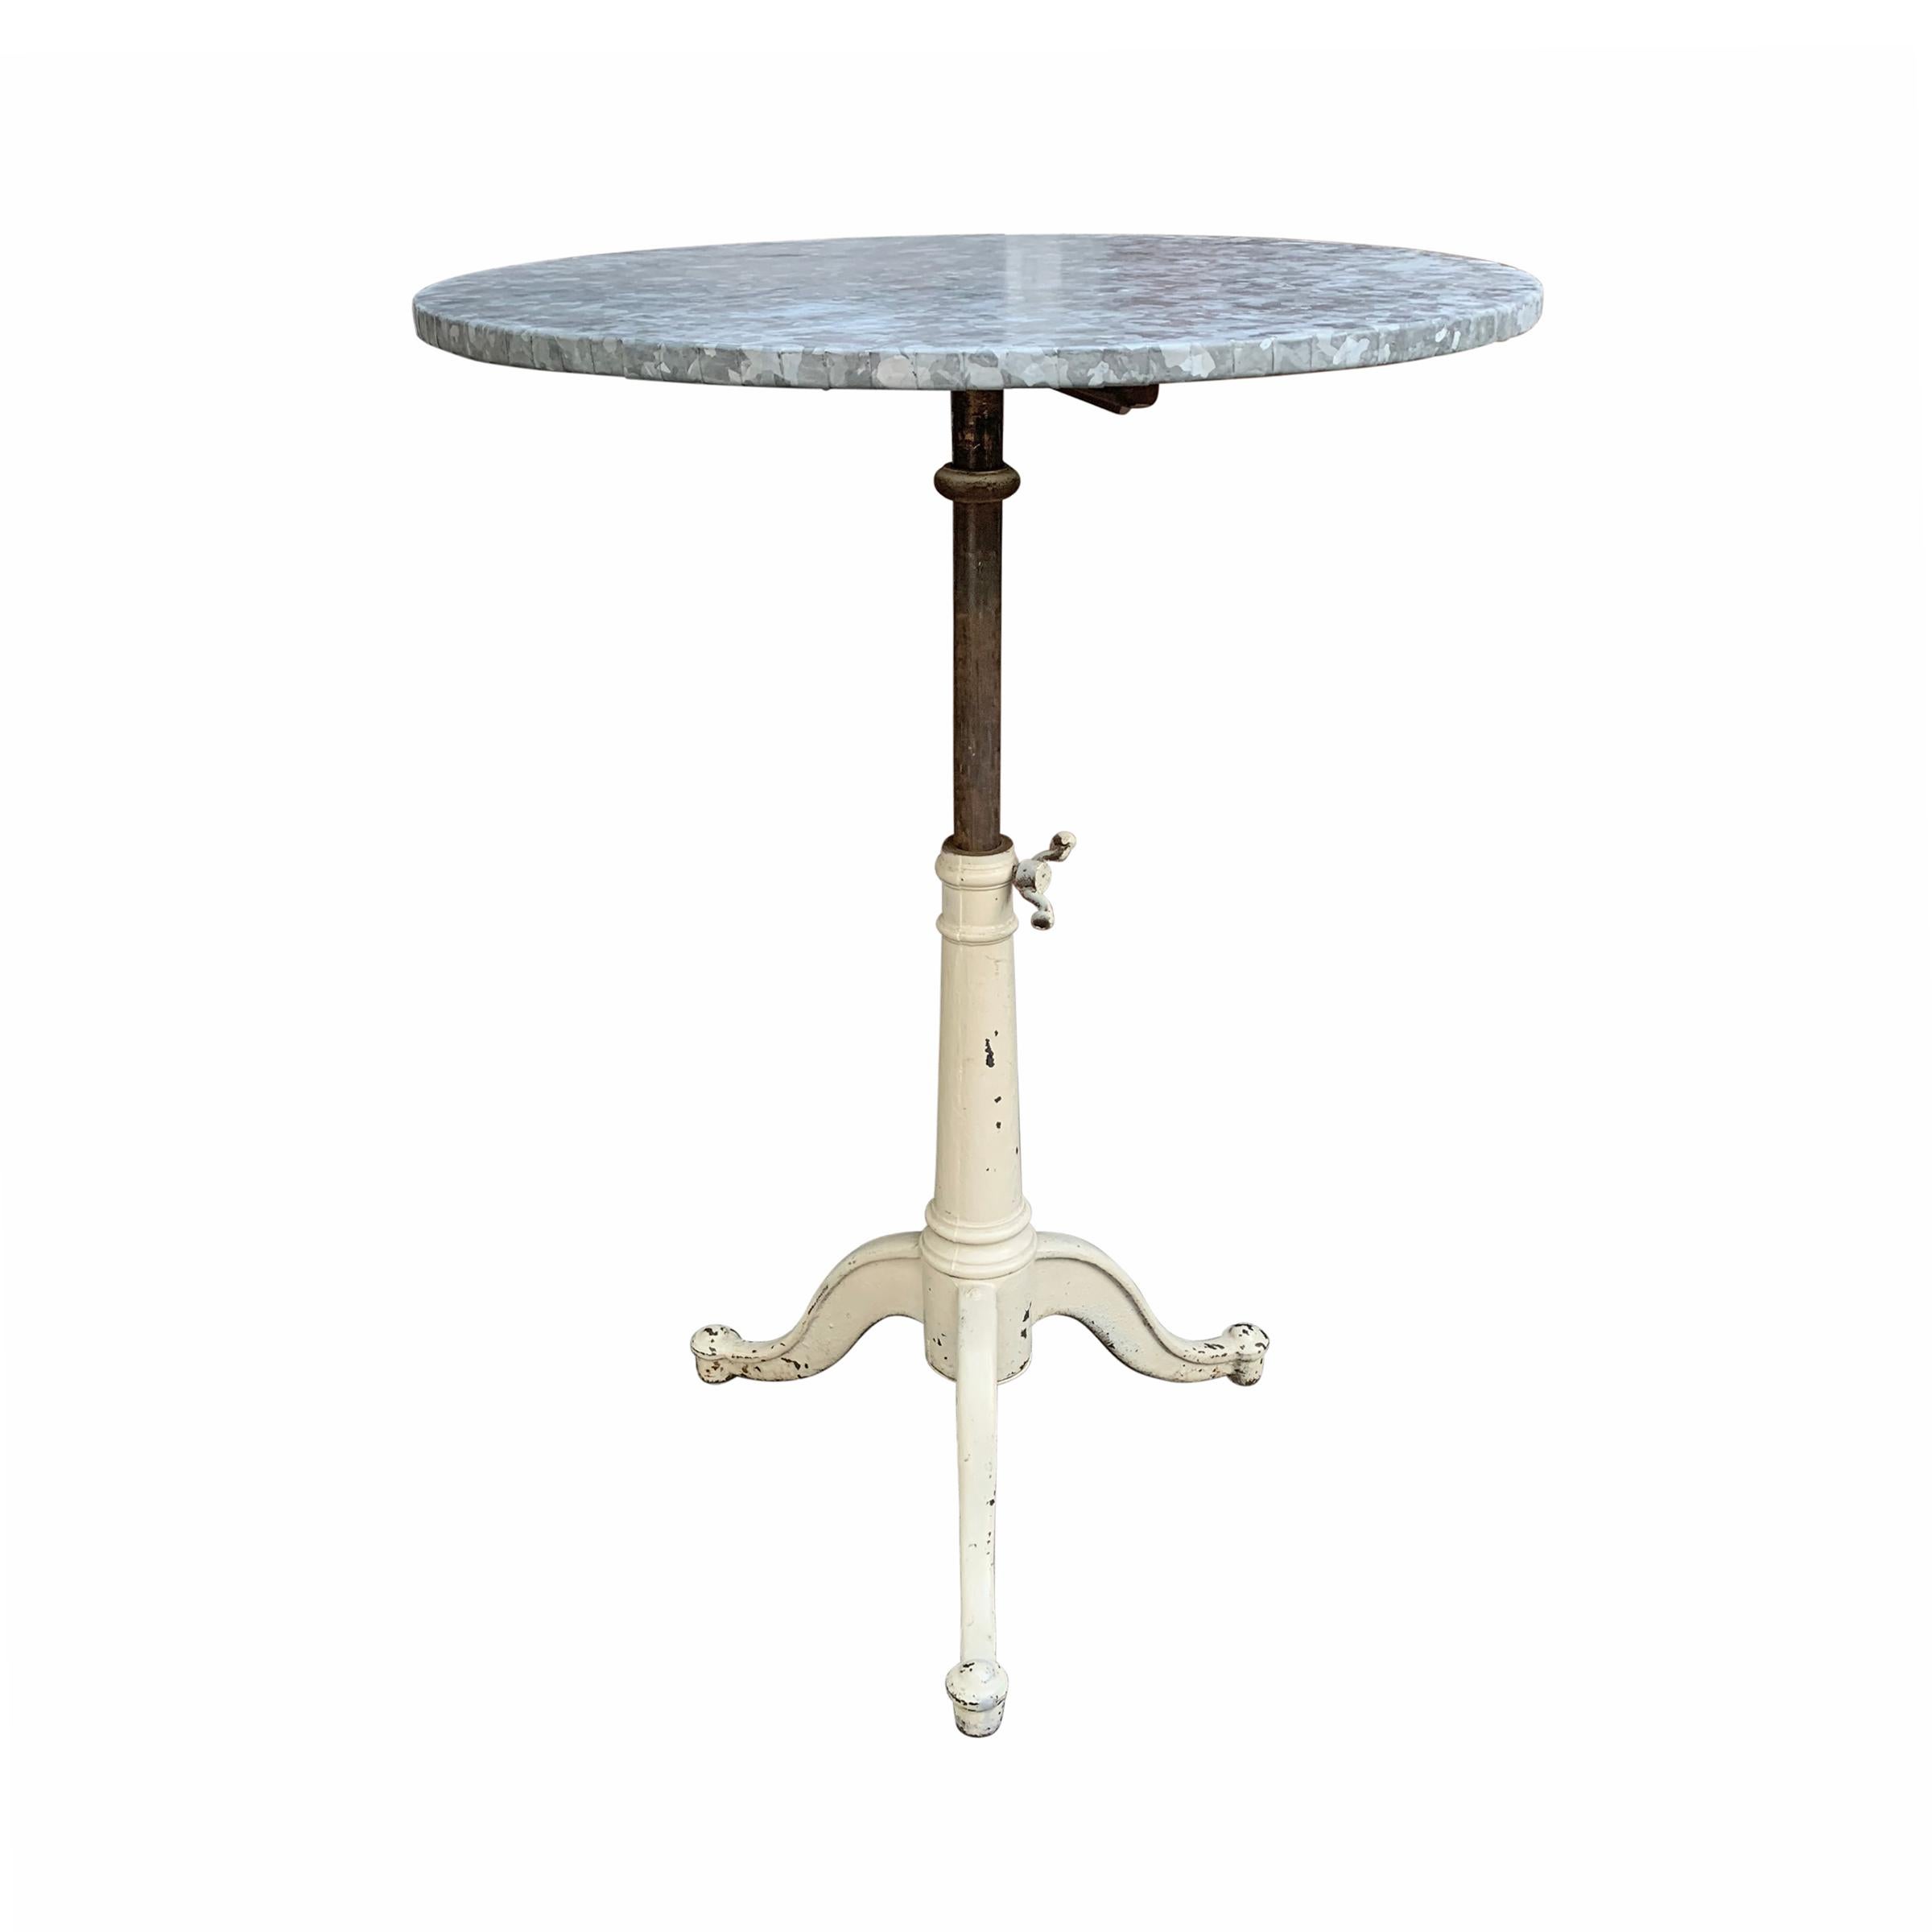 American 19th Century Adjustable Zinc Top Café Table